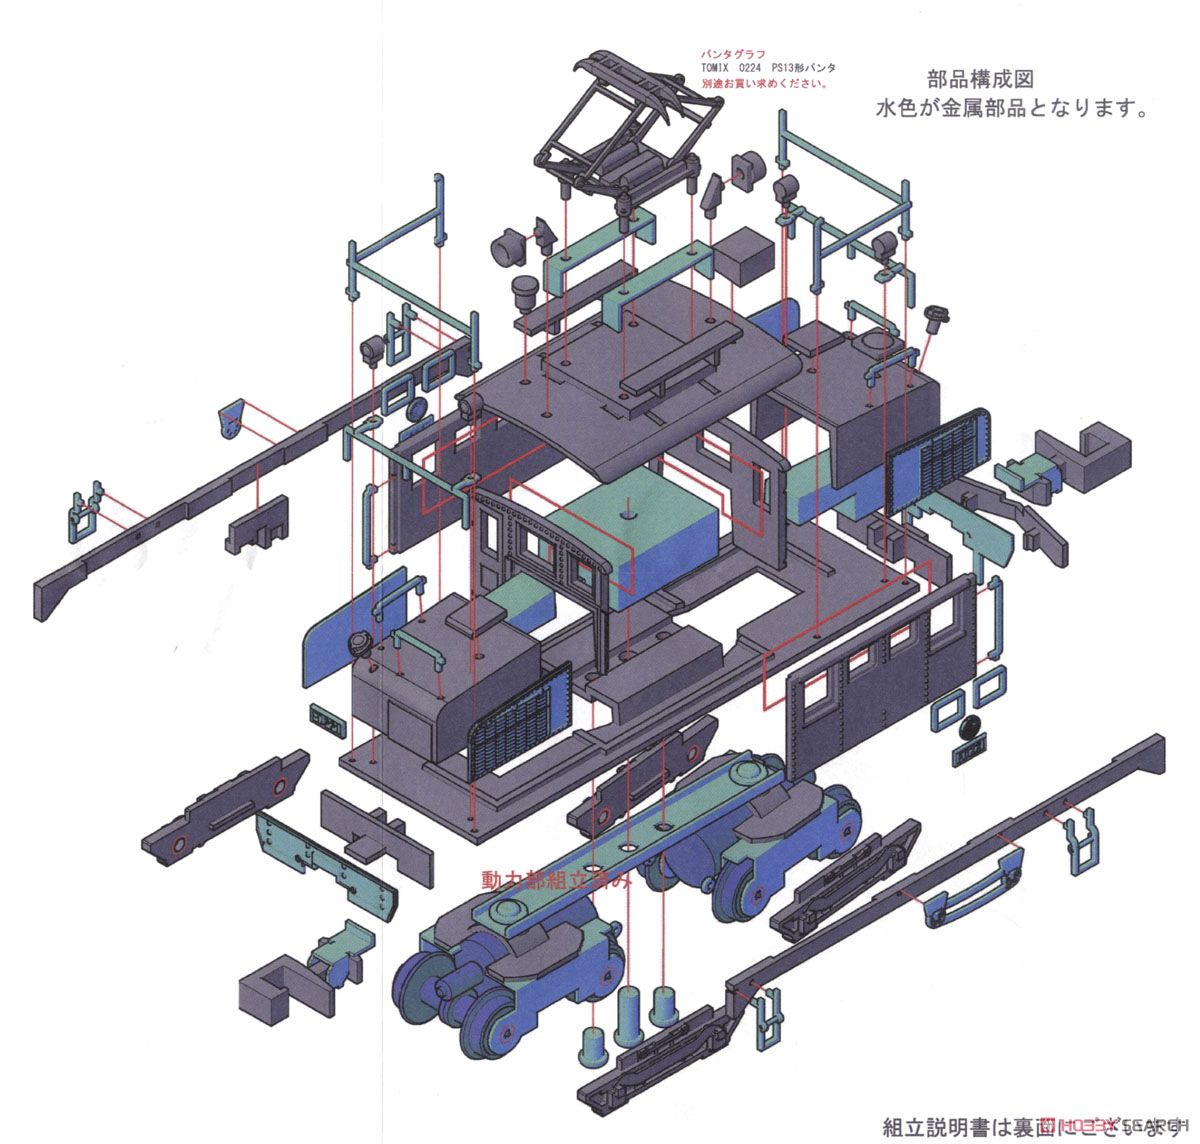 プラシリーズ 弘南鉄道 ED22 1 電気機関車 (組立キット) (鉄道模型) 設計図2